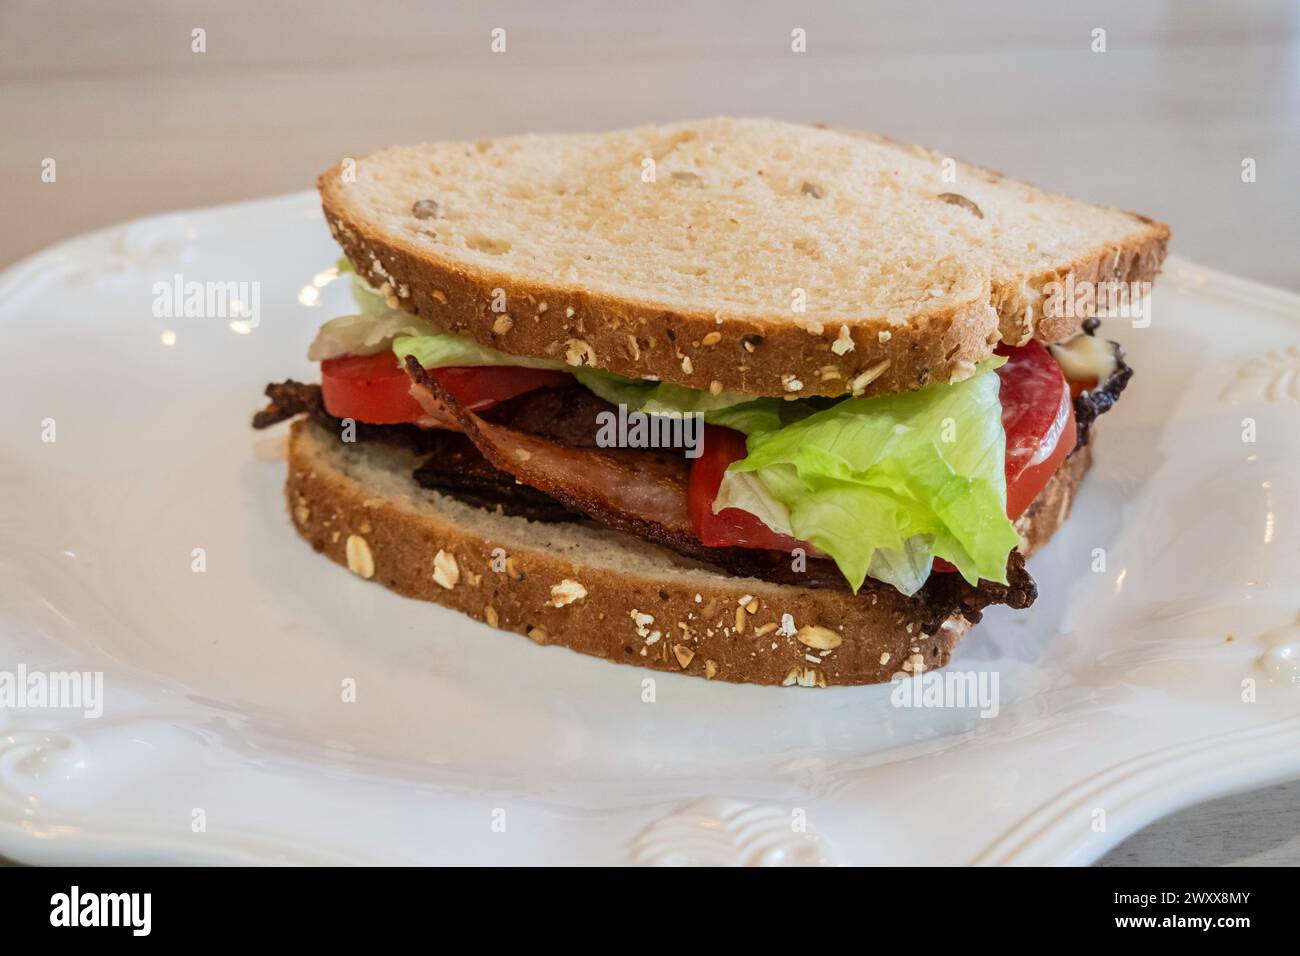 BLT, bacon, laitue et sandwich tomate avec pain d'avoine et mayonnaise sur une assiette blanche. Banque D'Images